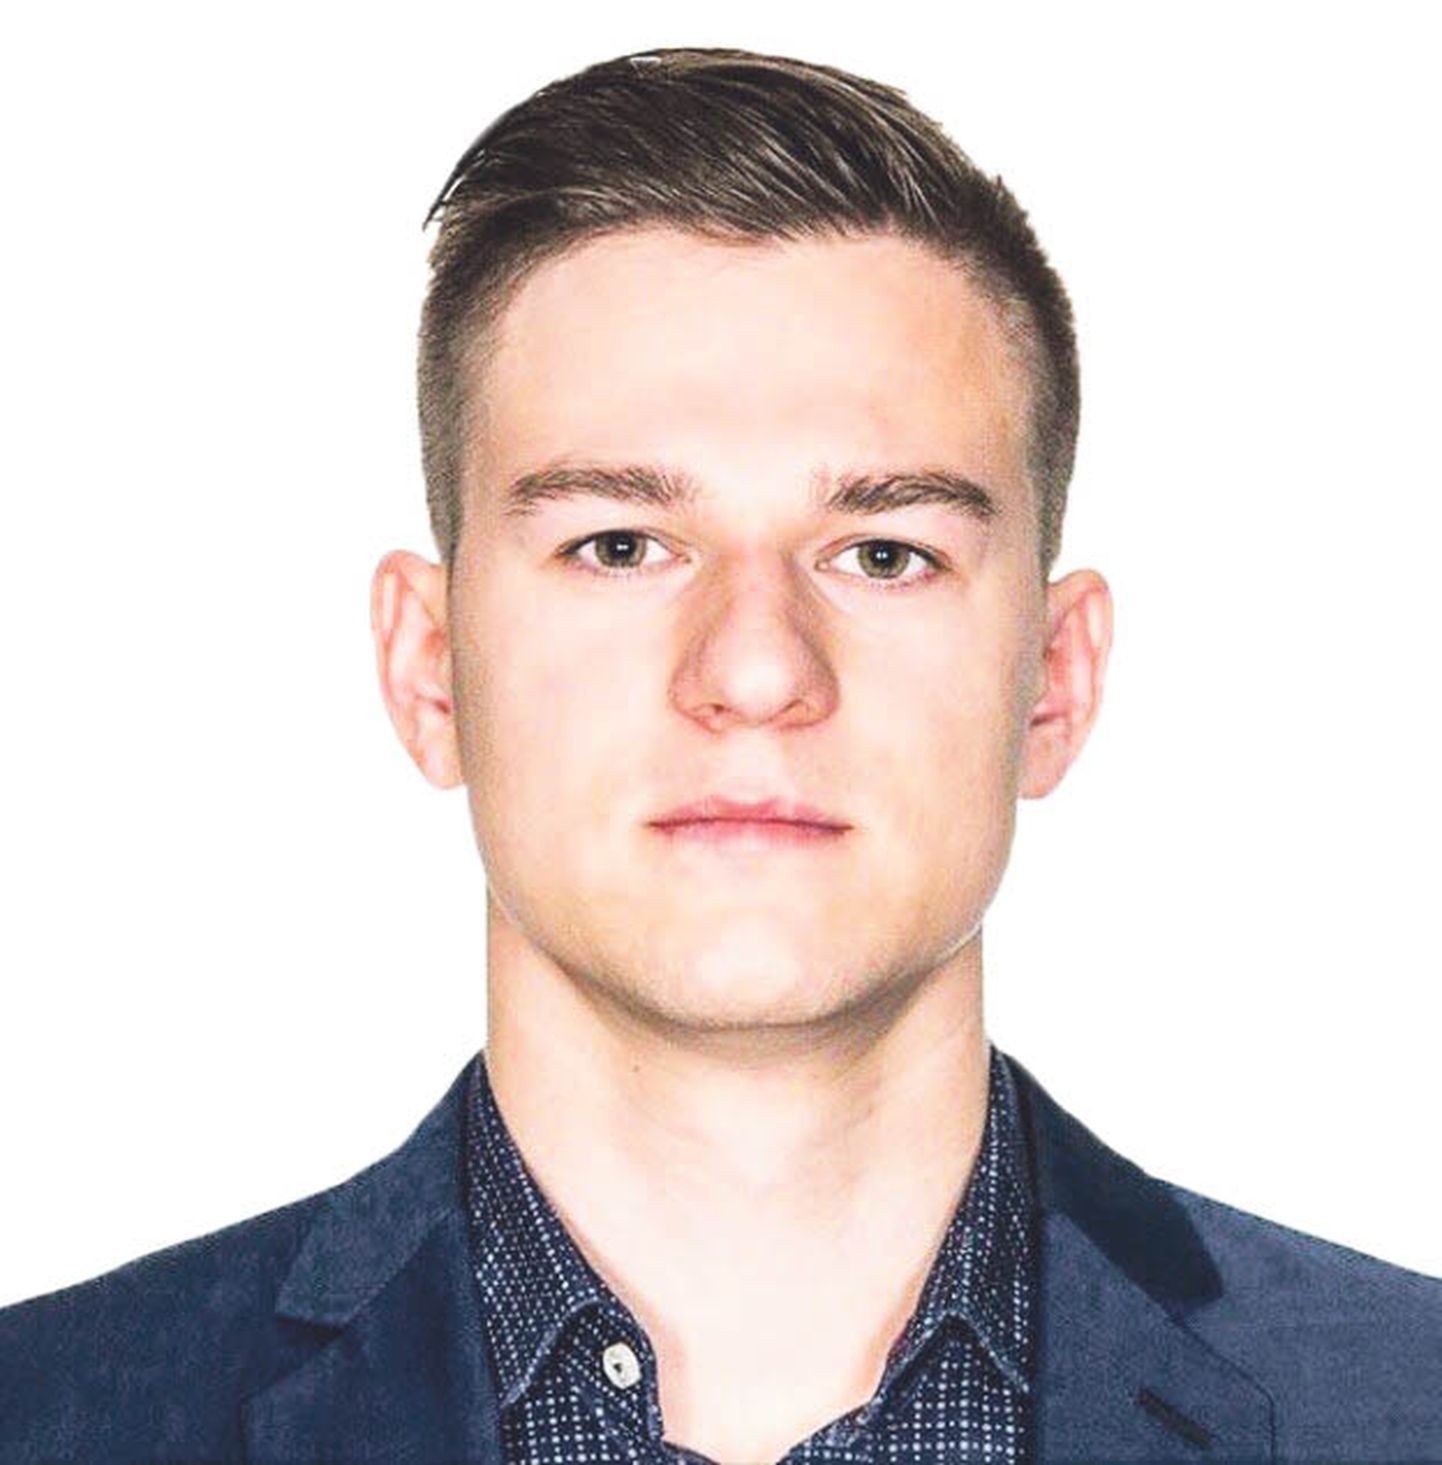 Павел Прокопенко, член правления организации "Молодые социал-демократы".